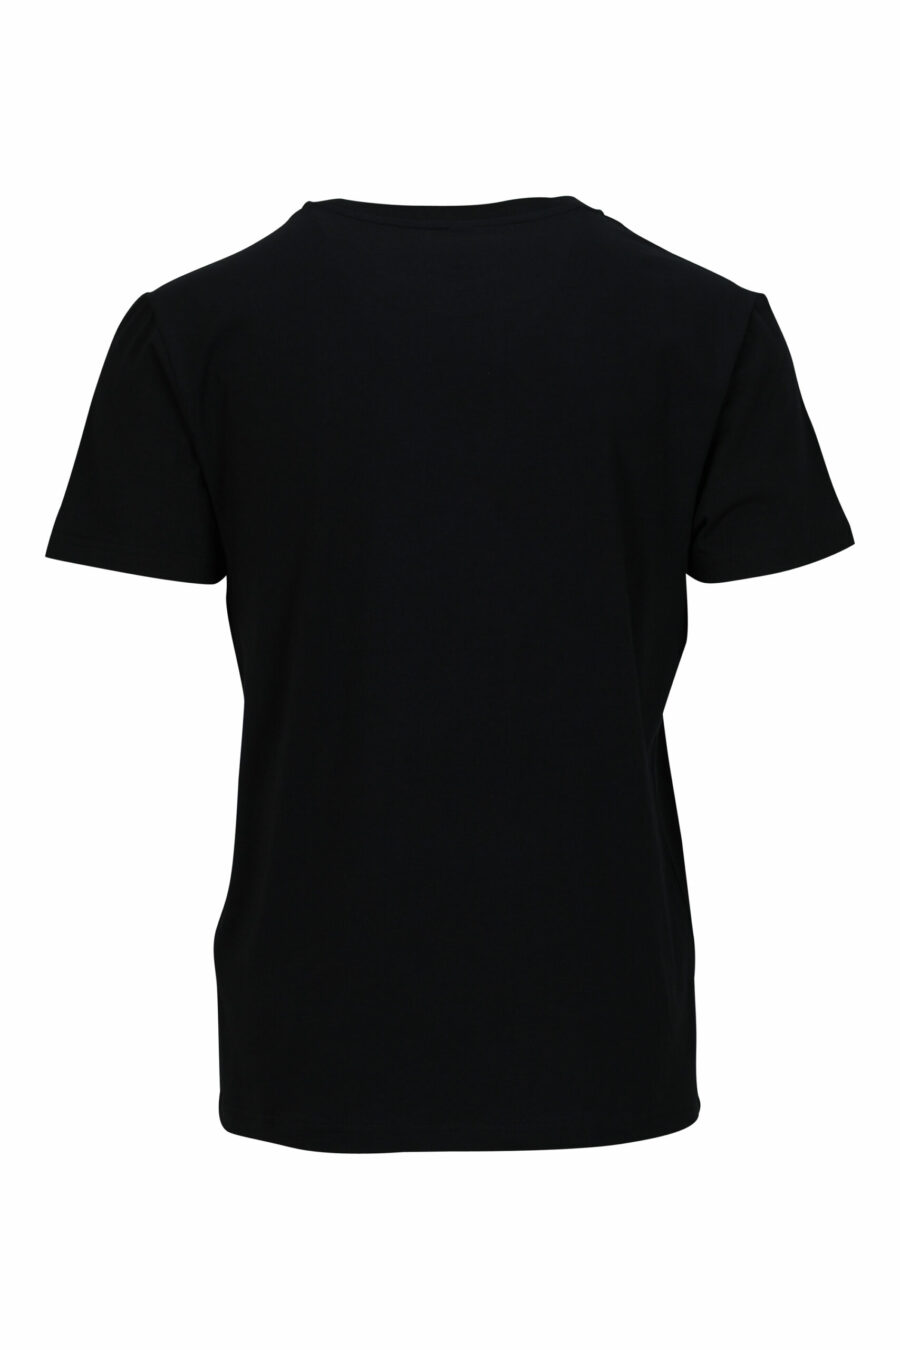 T-shirt preta com minilogo "swim" - 667113673530 1 scaled